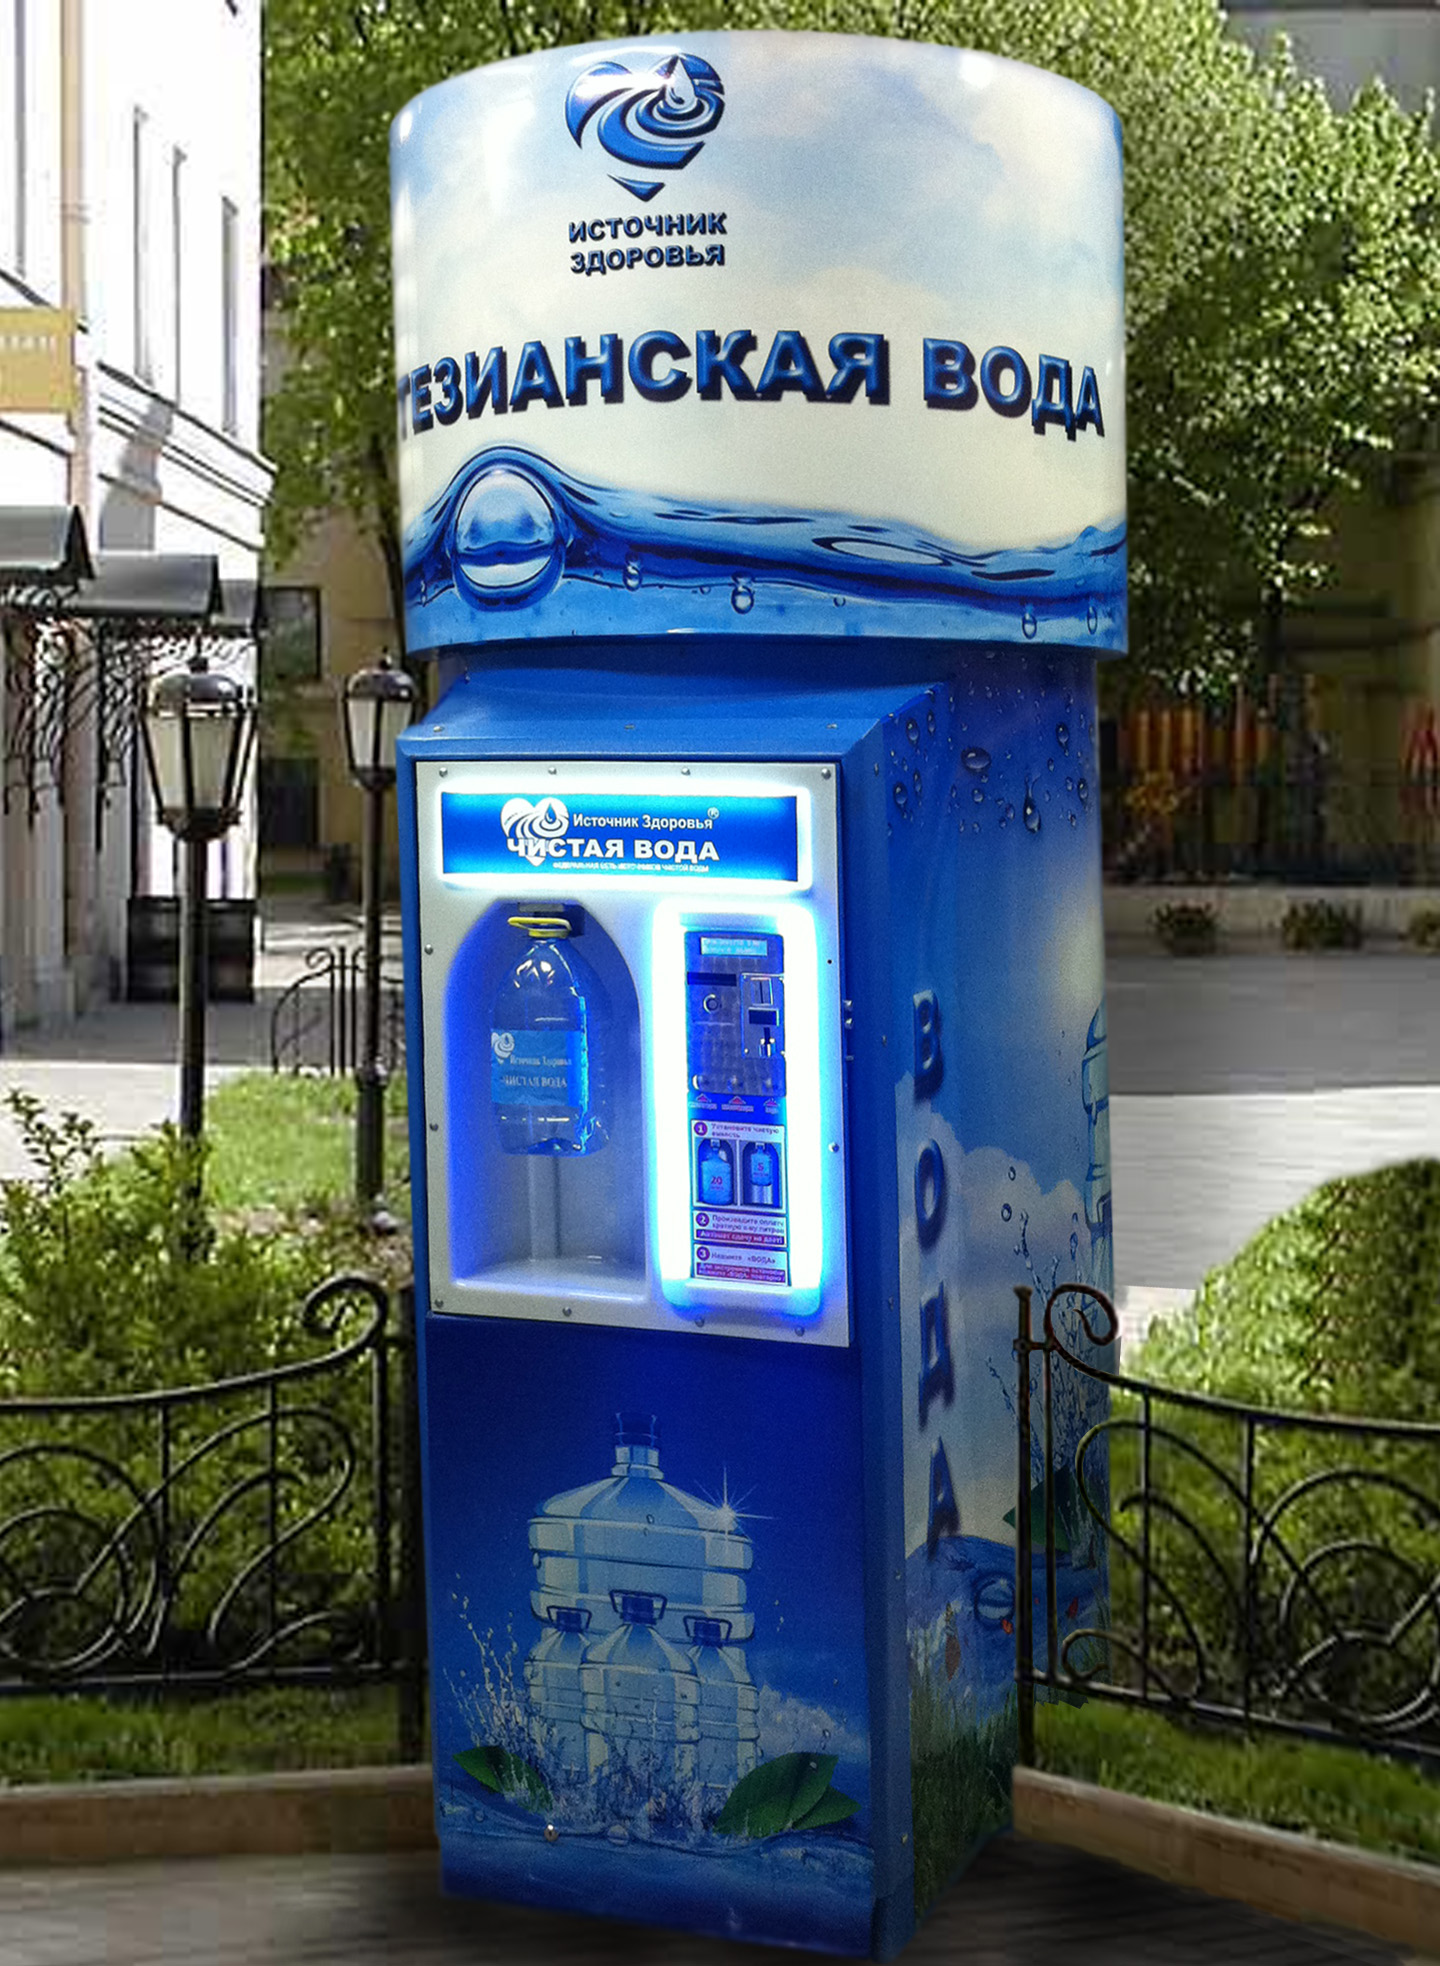 Пункты продажи воды. Автомат с водой. Аппарат для воды. Автомат для розлива воды. Аппарат для розлива воды на улице.